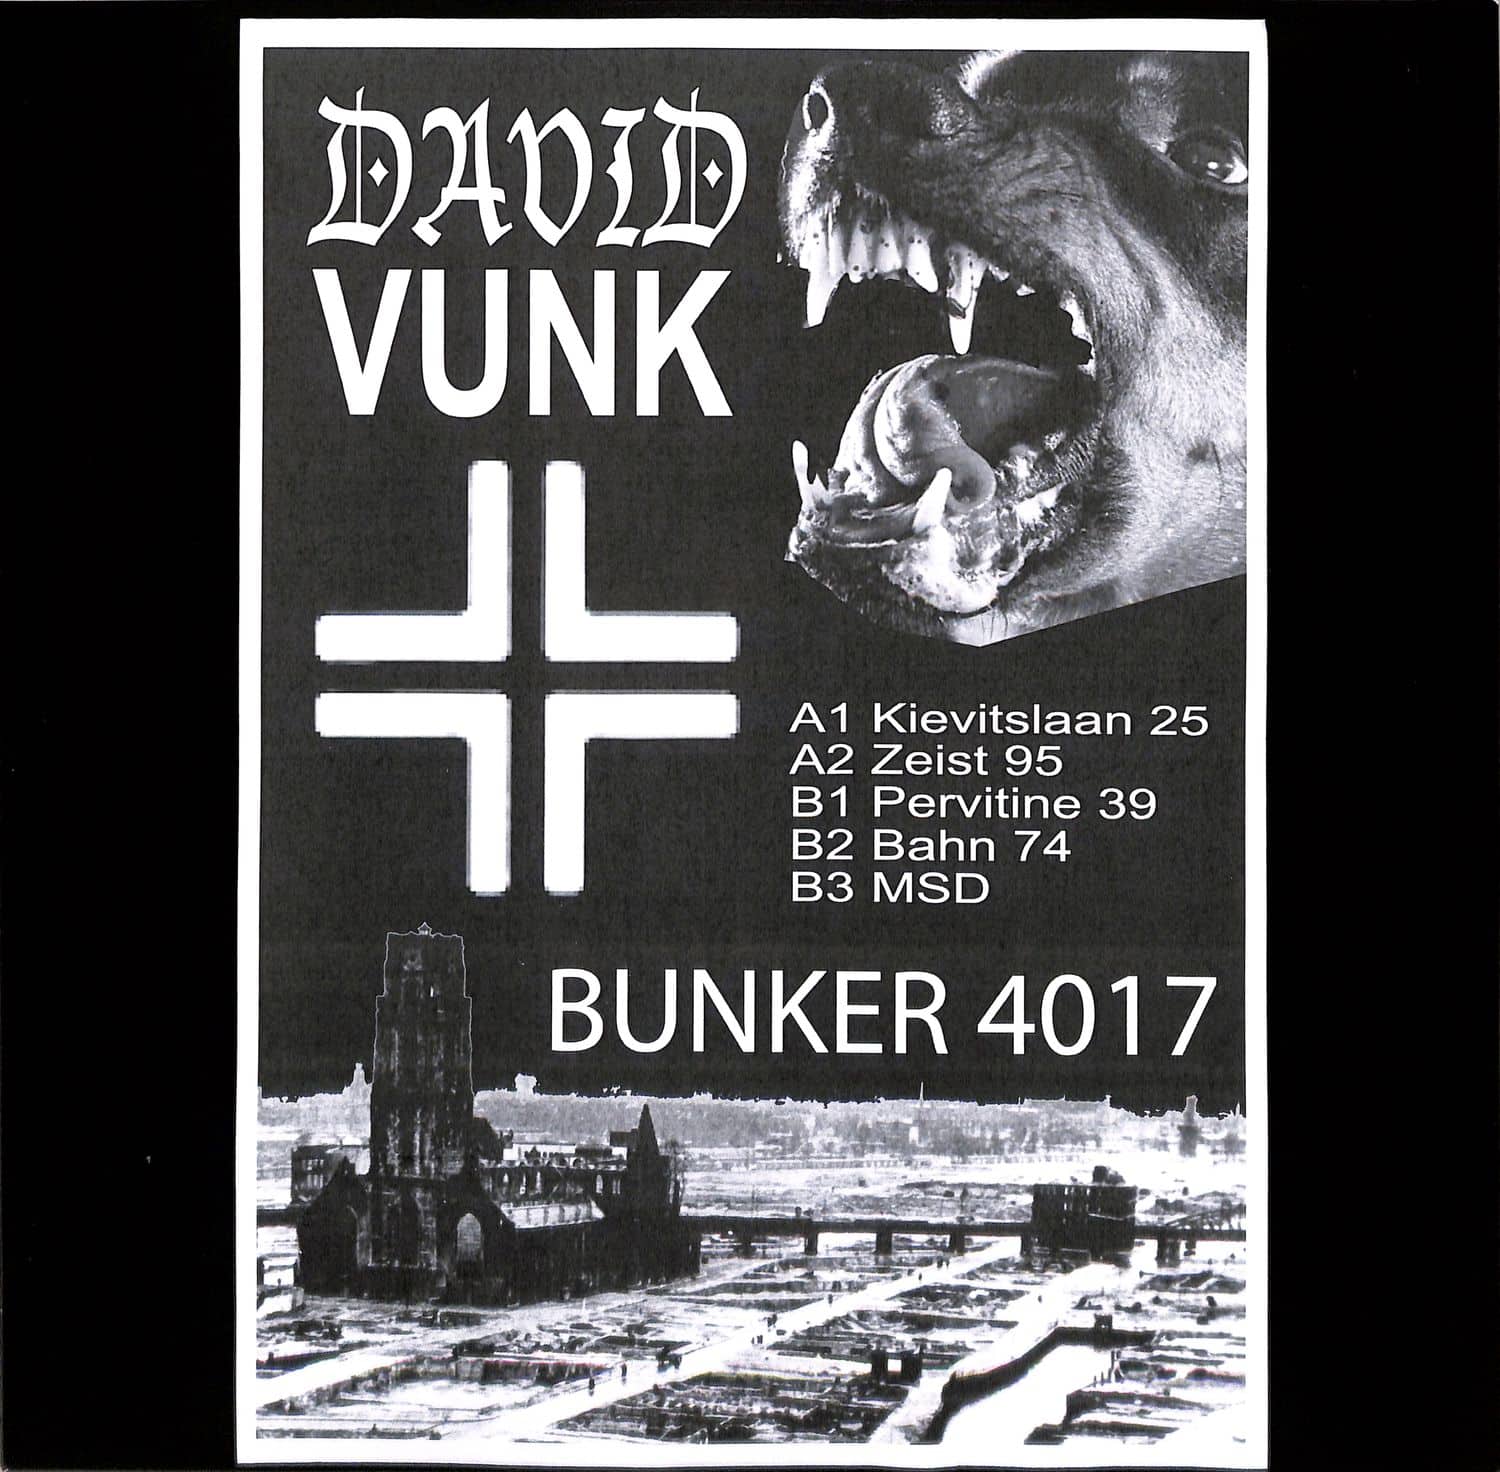 David Vunk - BUNKER 4017